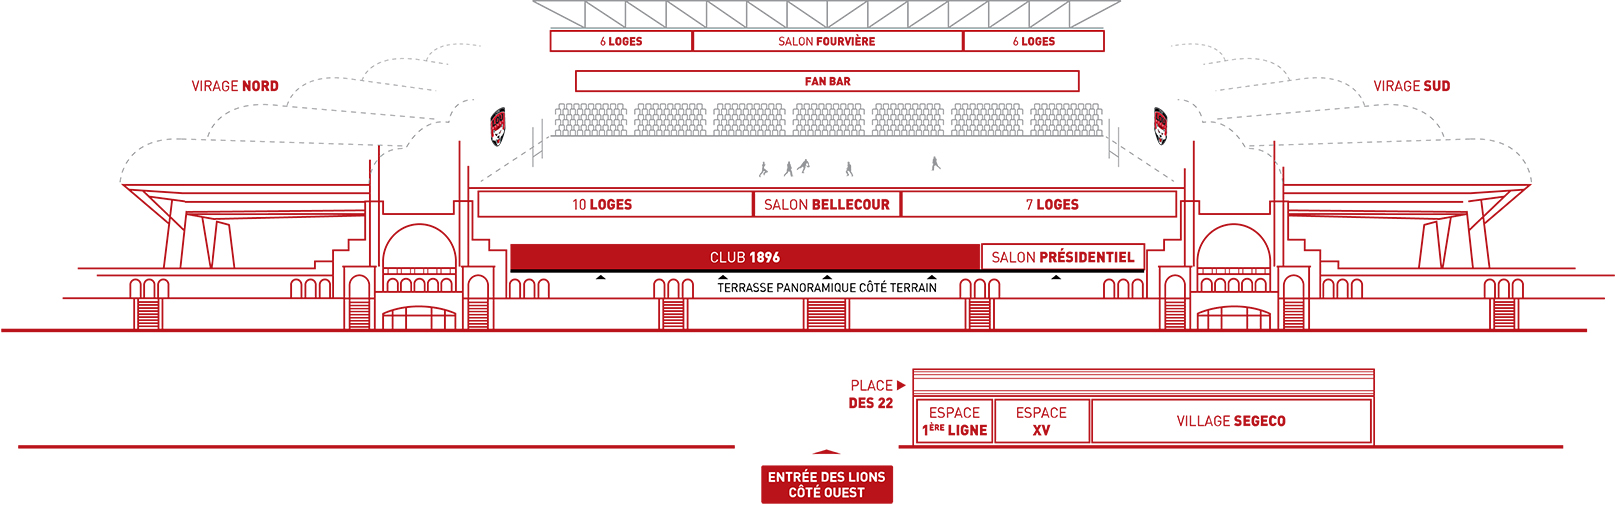 Espace club 1896 Matmut Stadium Lyon Gerland plan schématique 